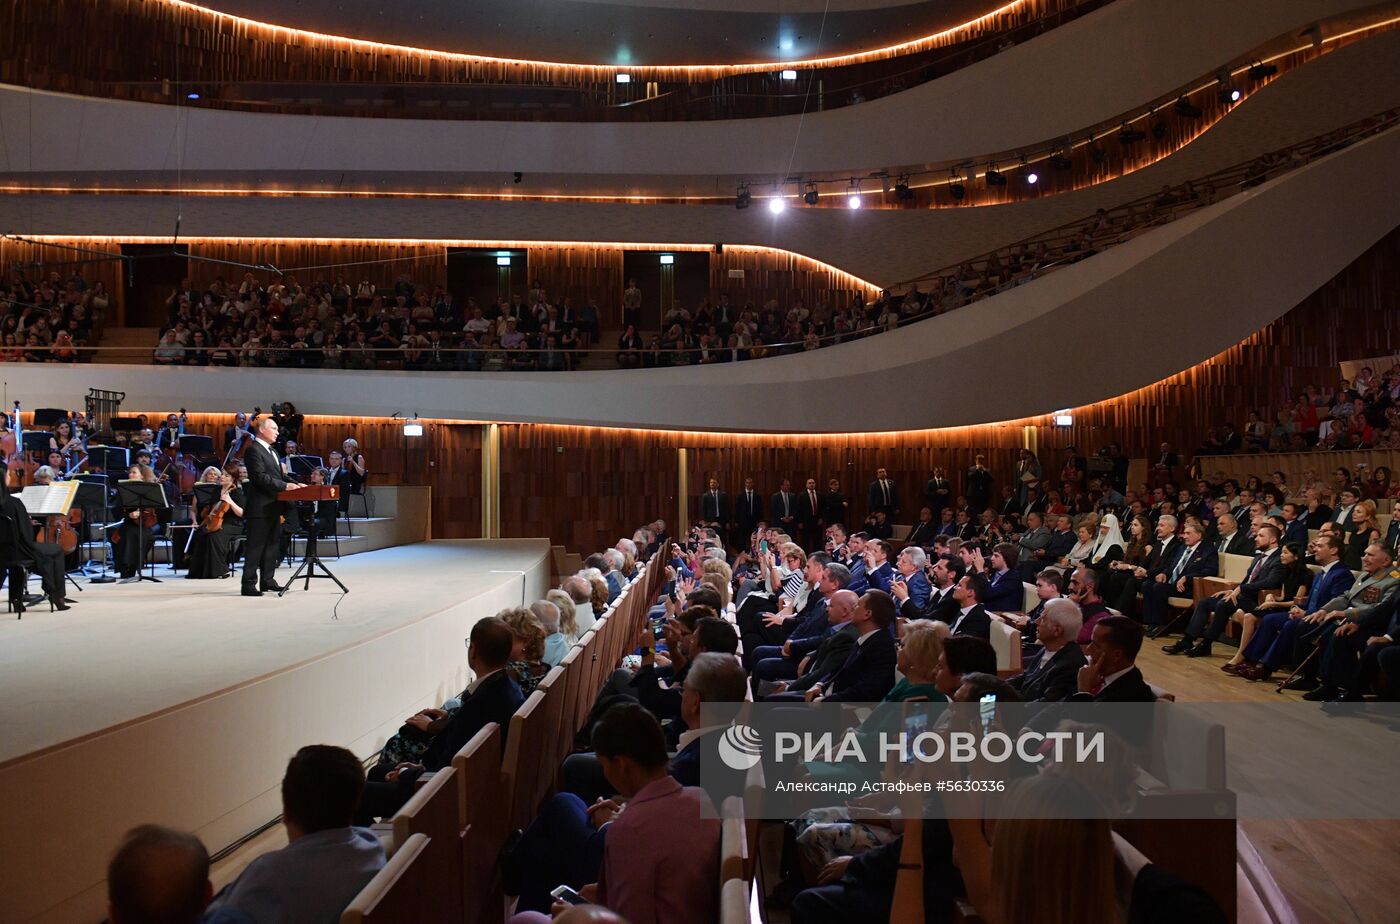 Президент РФ В. Путин и премьер-министр РФ Д. Медведев приняли участие в открытии концертного зала "Зарядье"